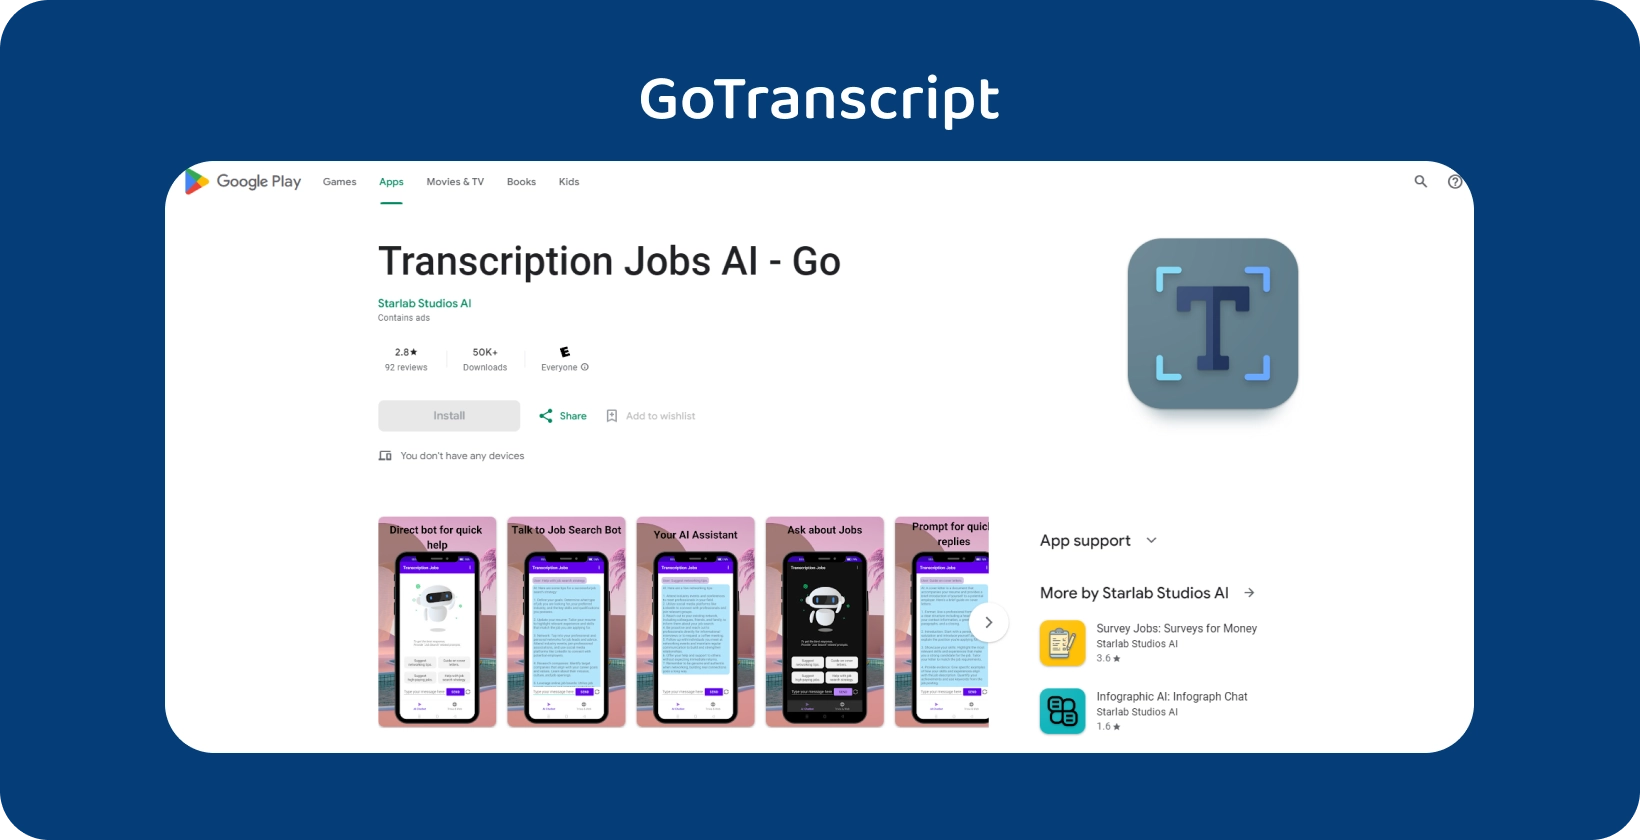 GoTranscript aplicativo no Google Play, projetado para gerenciar trabalhos de transcrição com uma interface móvel intuitiva.